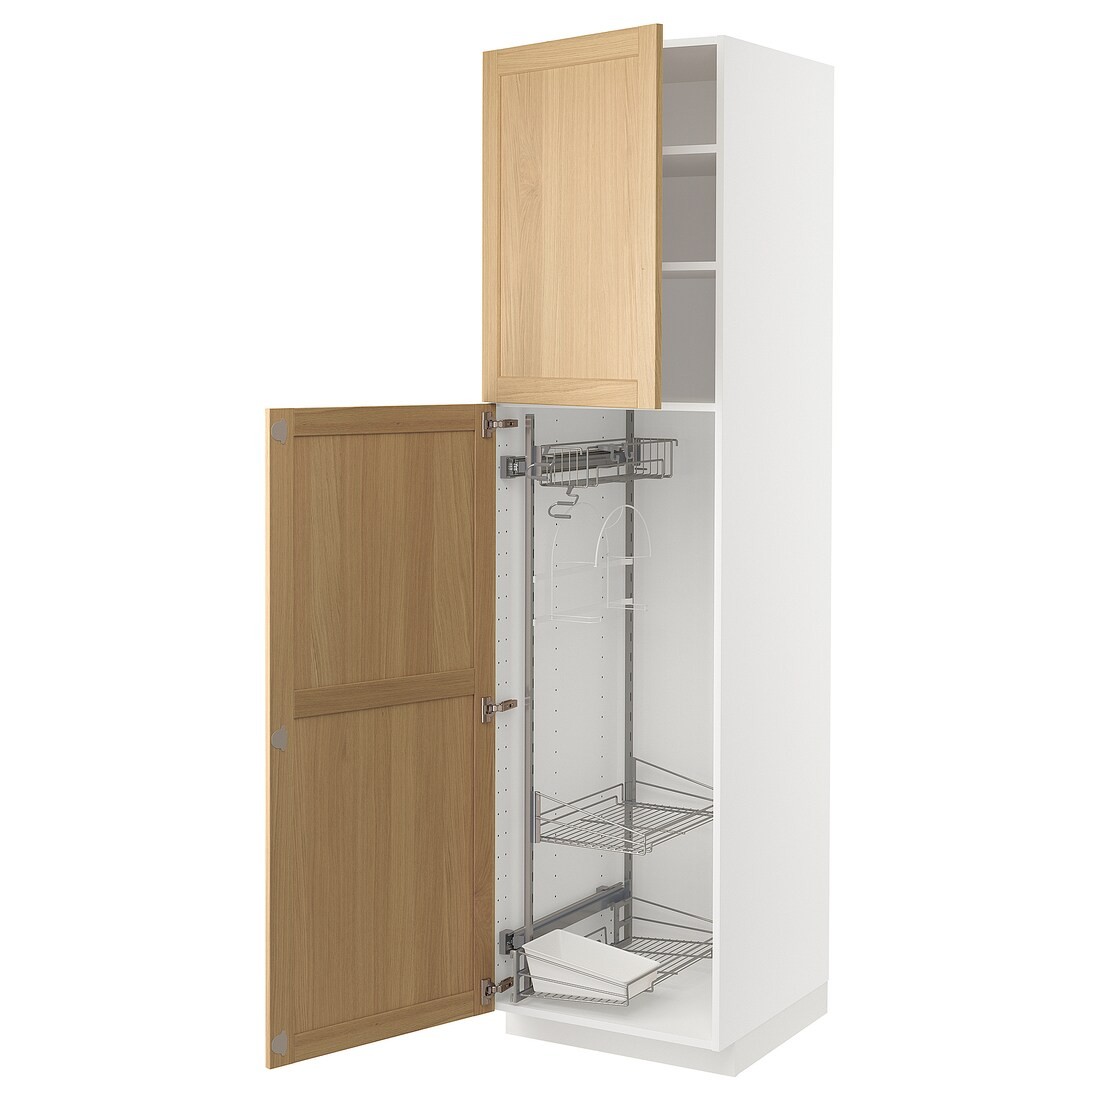 METOD Высокий шкаф с отделением для аксессуаров для уборки, белый / дуб Forsbacka, 60x60x220 см